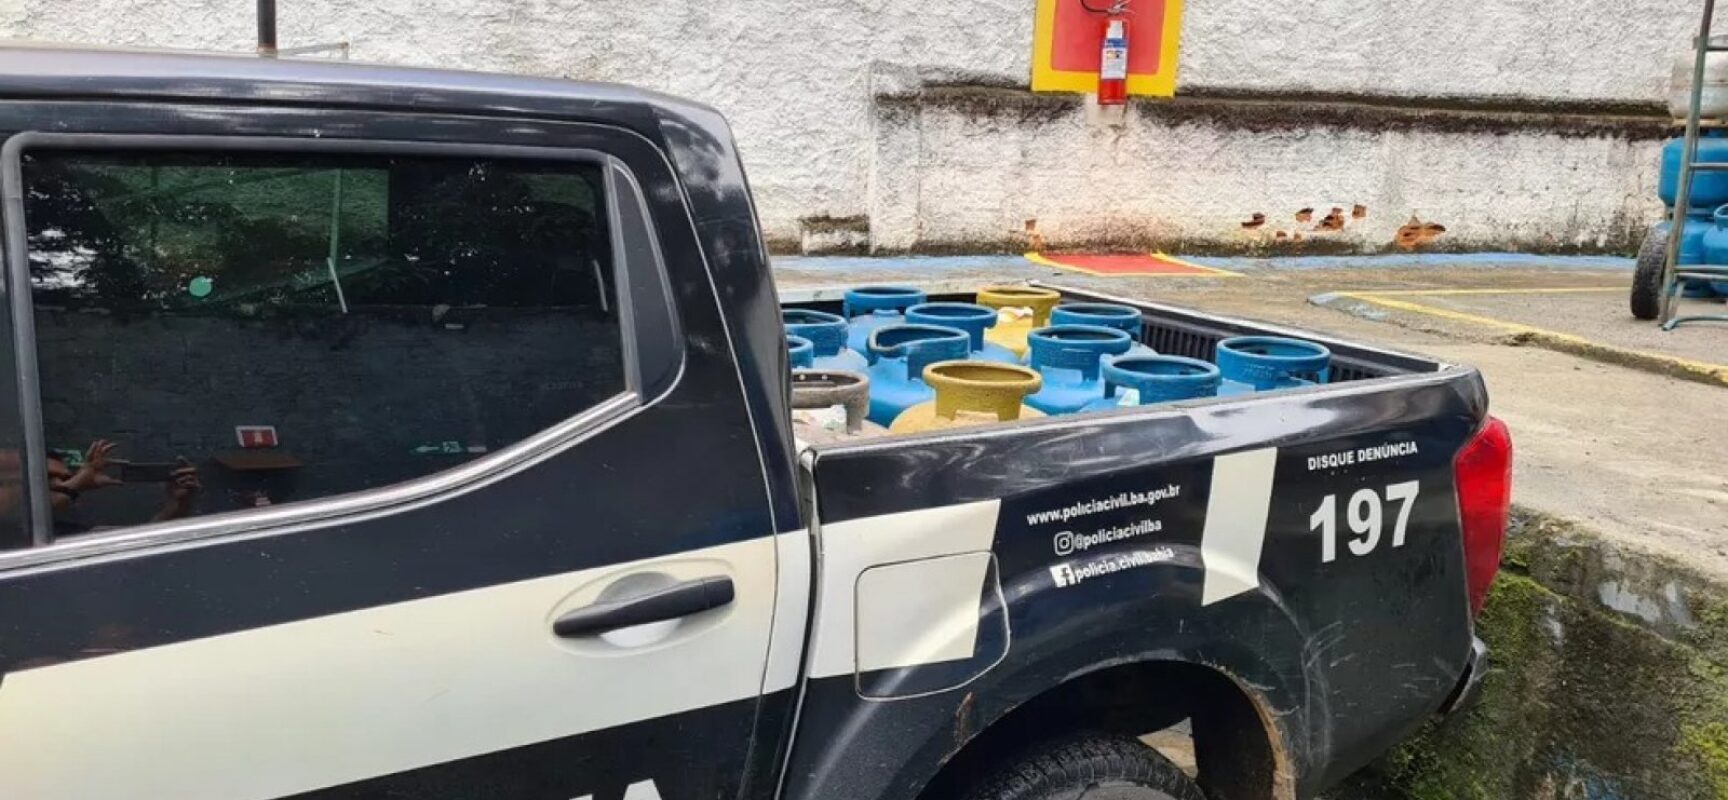 Polícia apreende botijões de gás vendidos ilegalmente no Banco da Vitória, em Ilhéus